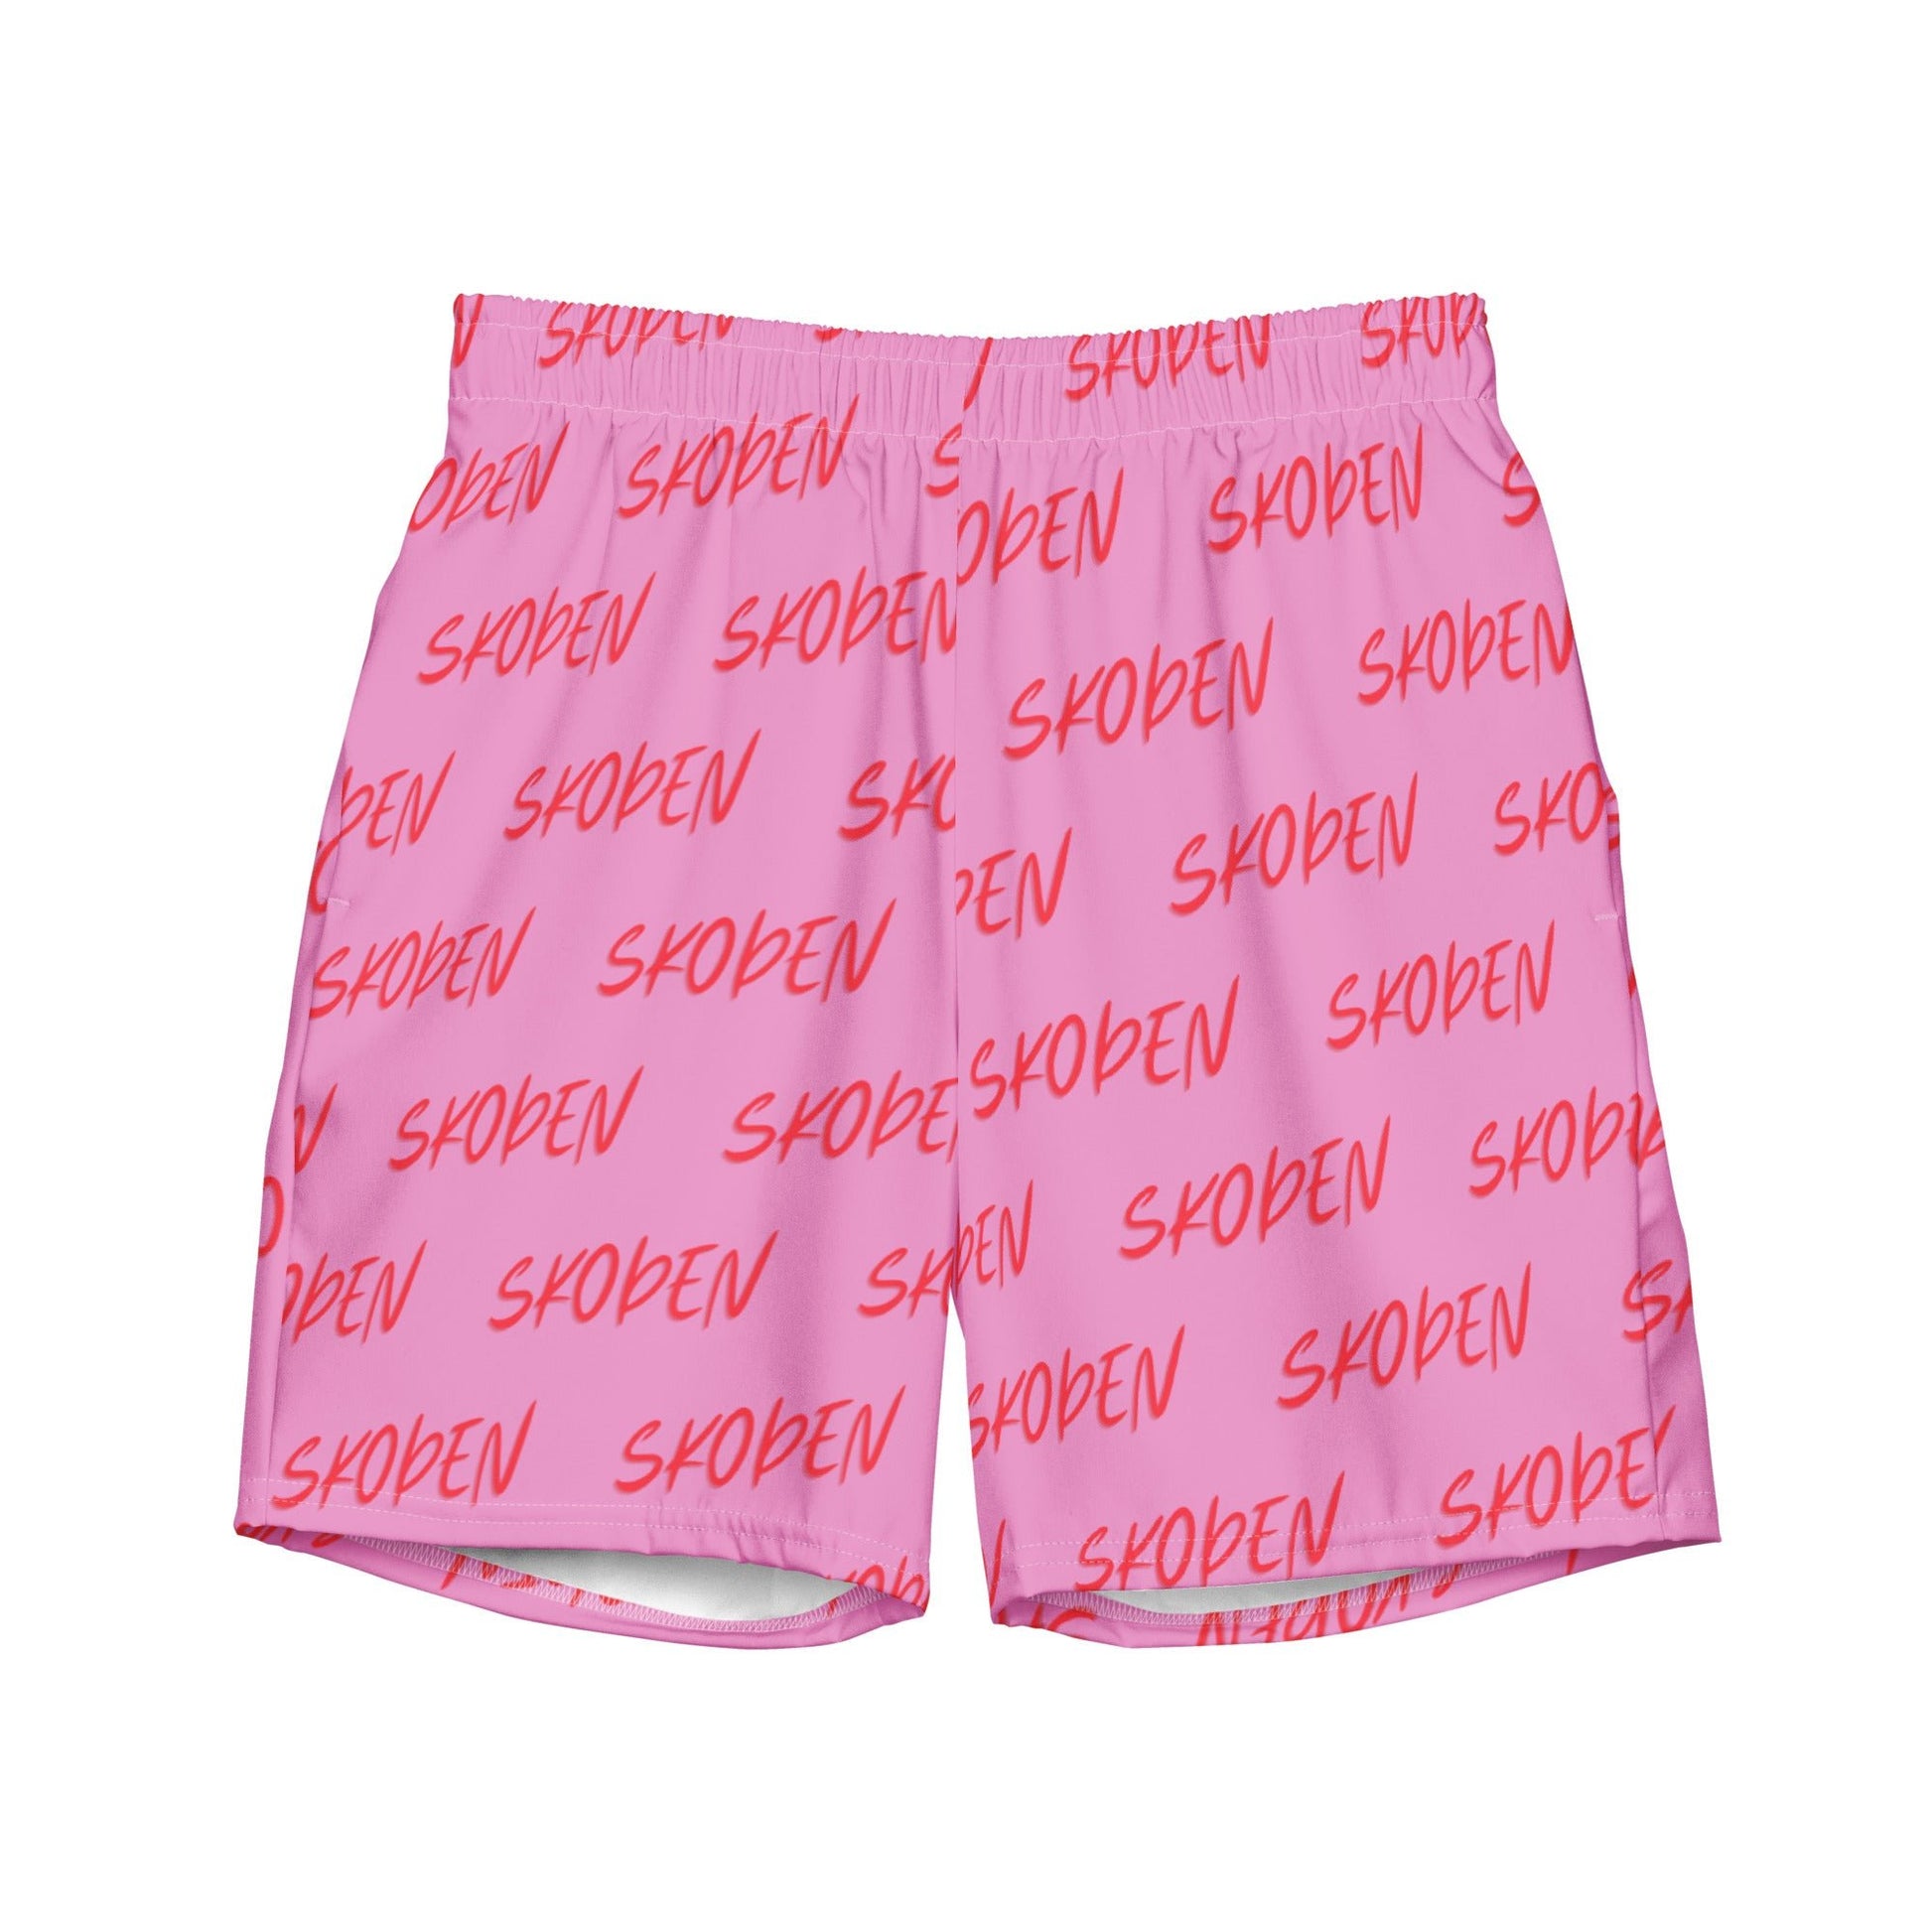 Men's Skoden Pink swim trunks - Nikikw Designs